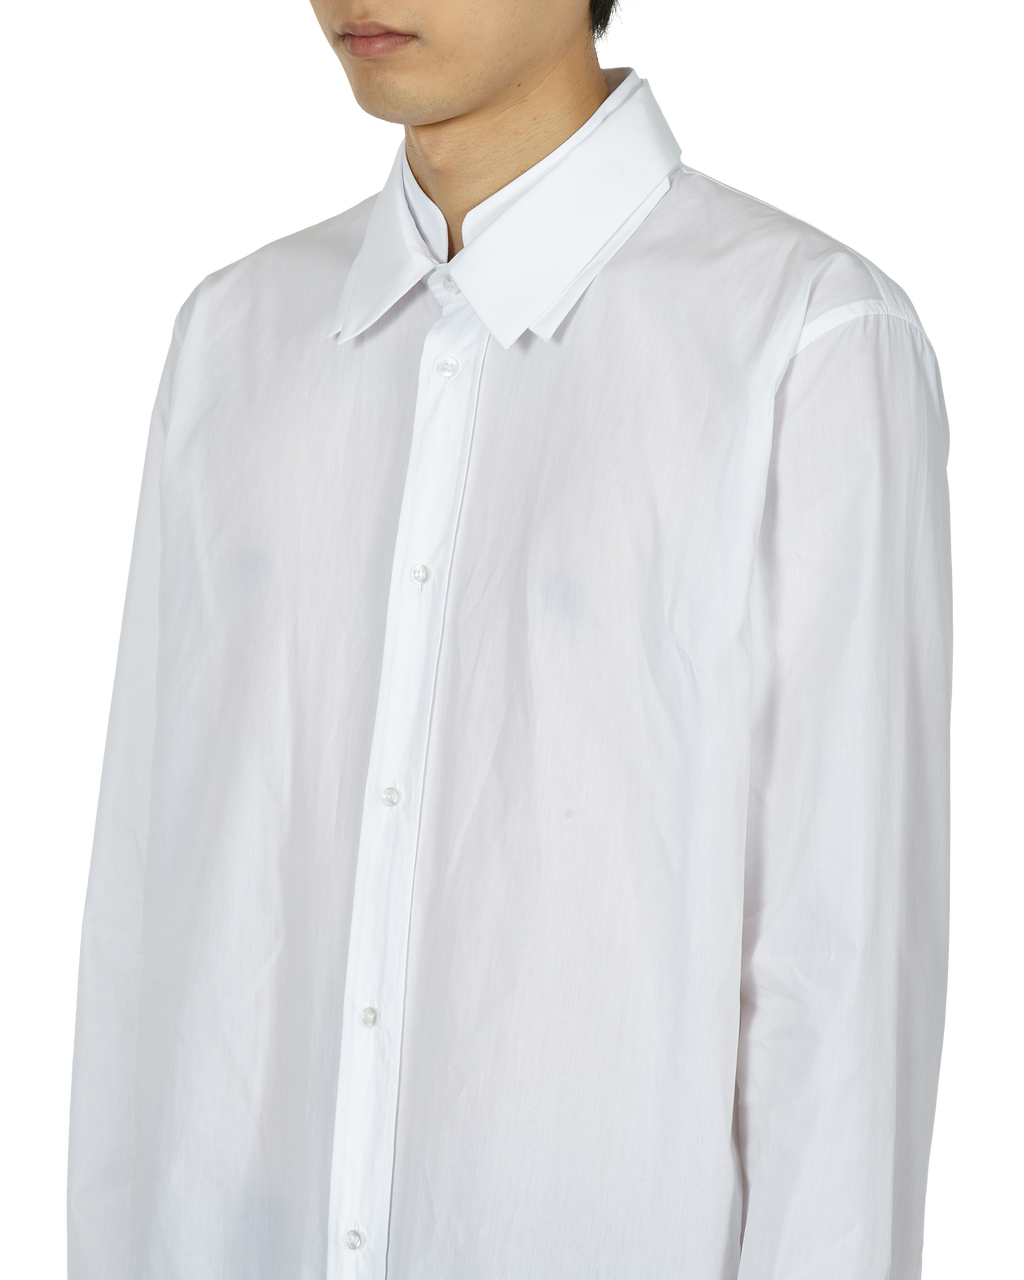 _J.L - A.L_ Triple Collar Shirt J278598-S-White 2